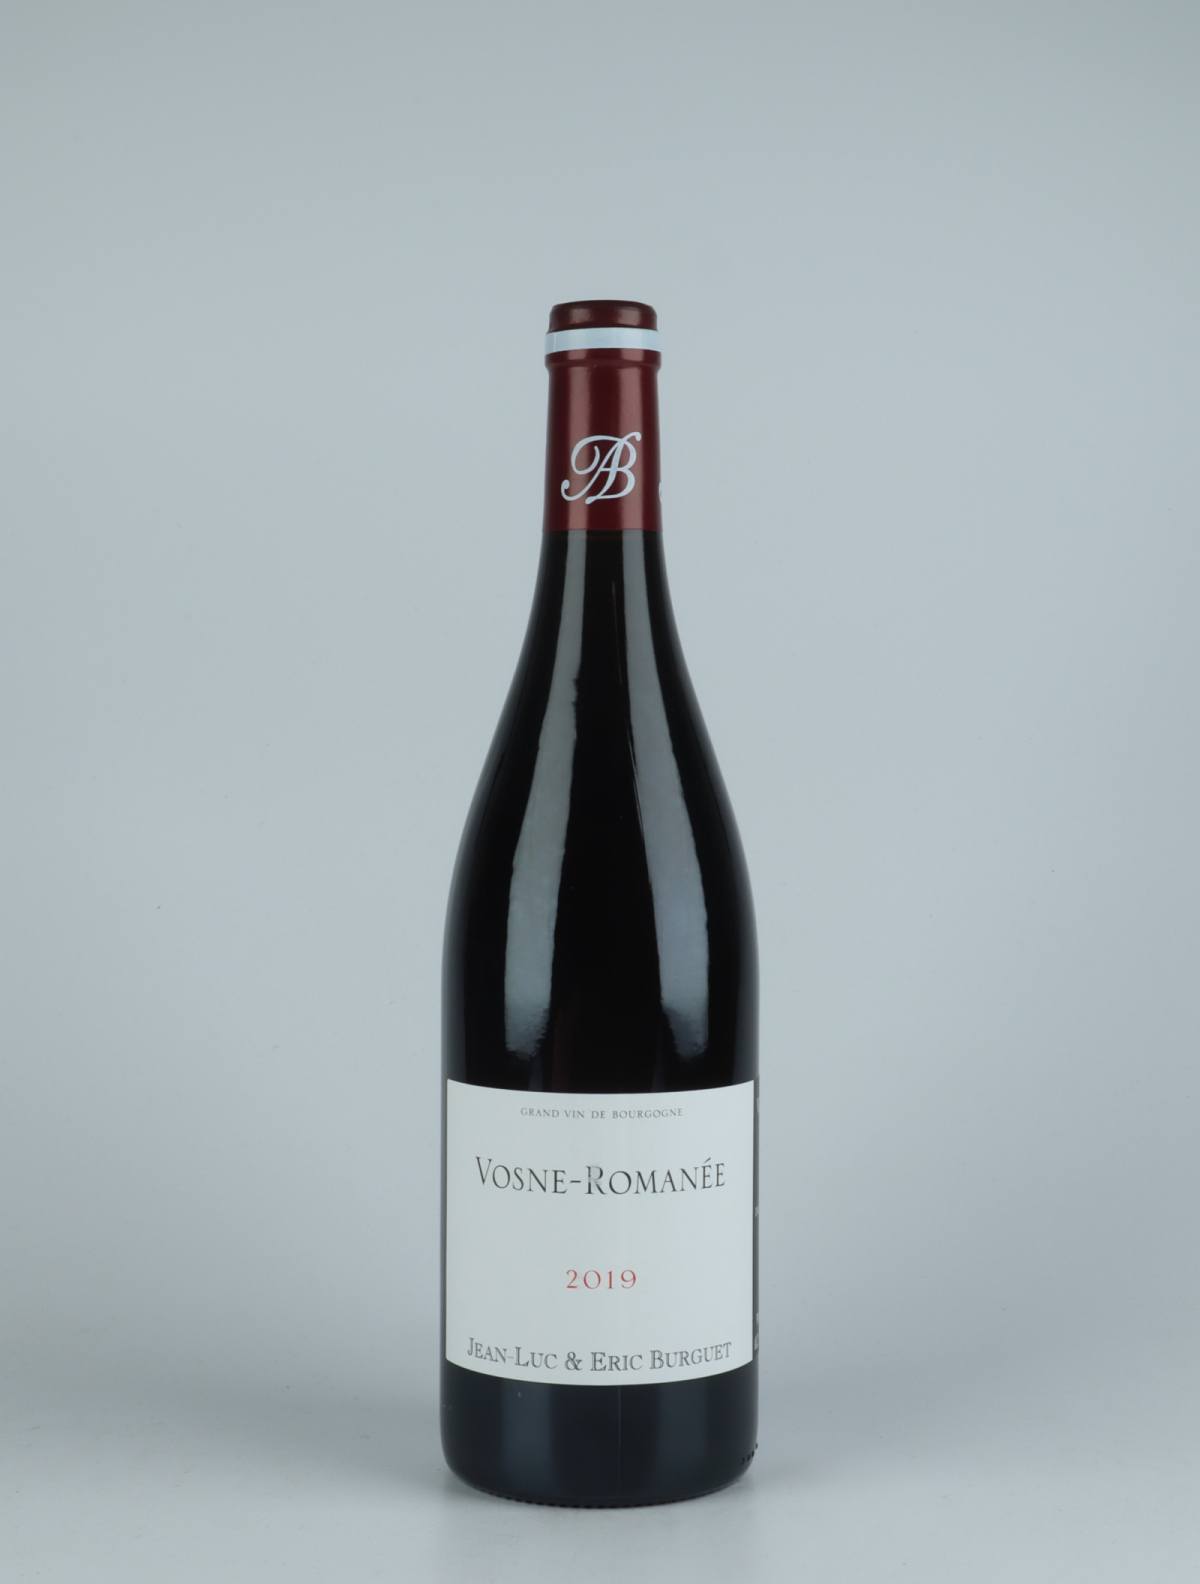 En flaske 2019 Vosne-Romanée Rødvin fra Jean-Luc & Eric Burguet, Bourgogne i Frankrig